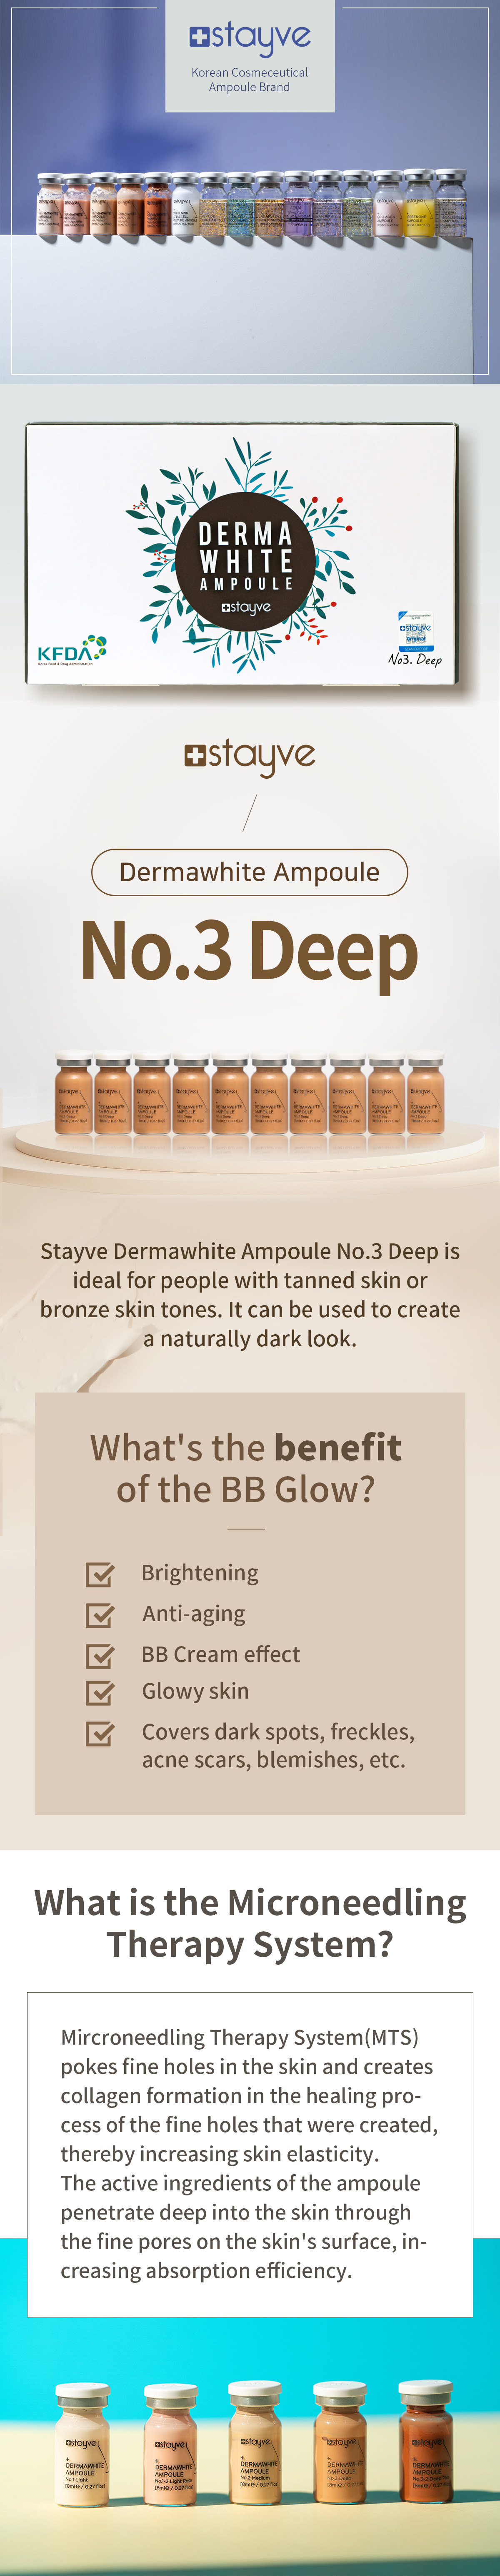 Stayve Dermawhite BB Glow Ampoule No.3 Deep 3